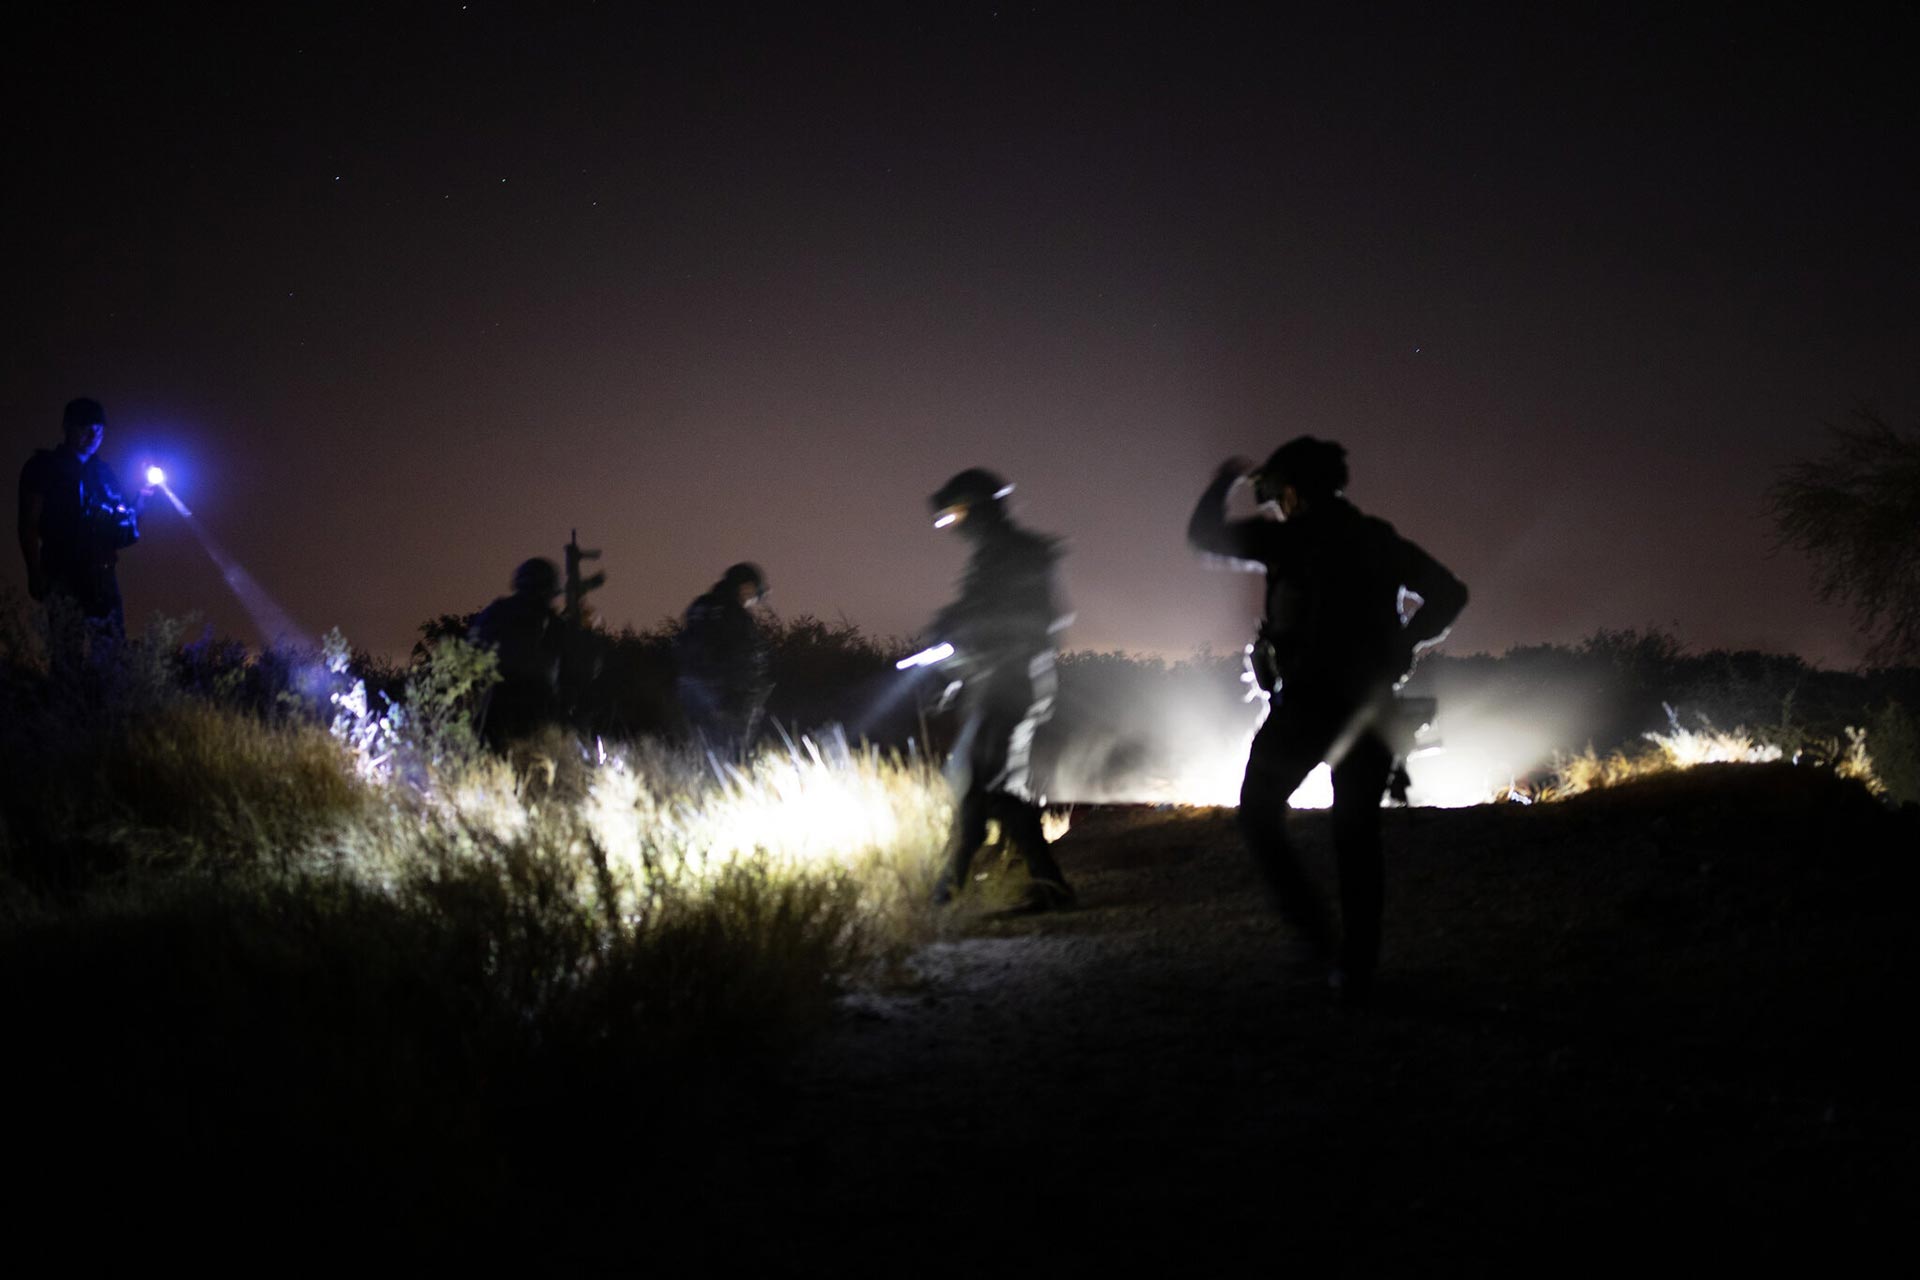 La policía patrullaba una zona remota que es muy frecuentada por los miembros del cártel, que buscan pasar desapercibidos, en las afueras de Reynosa, México